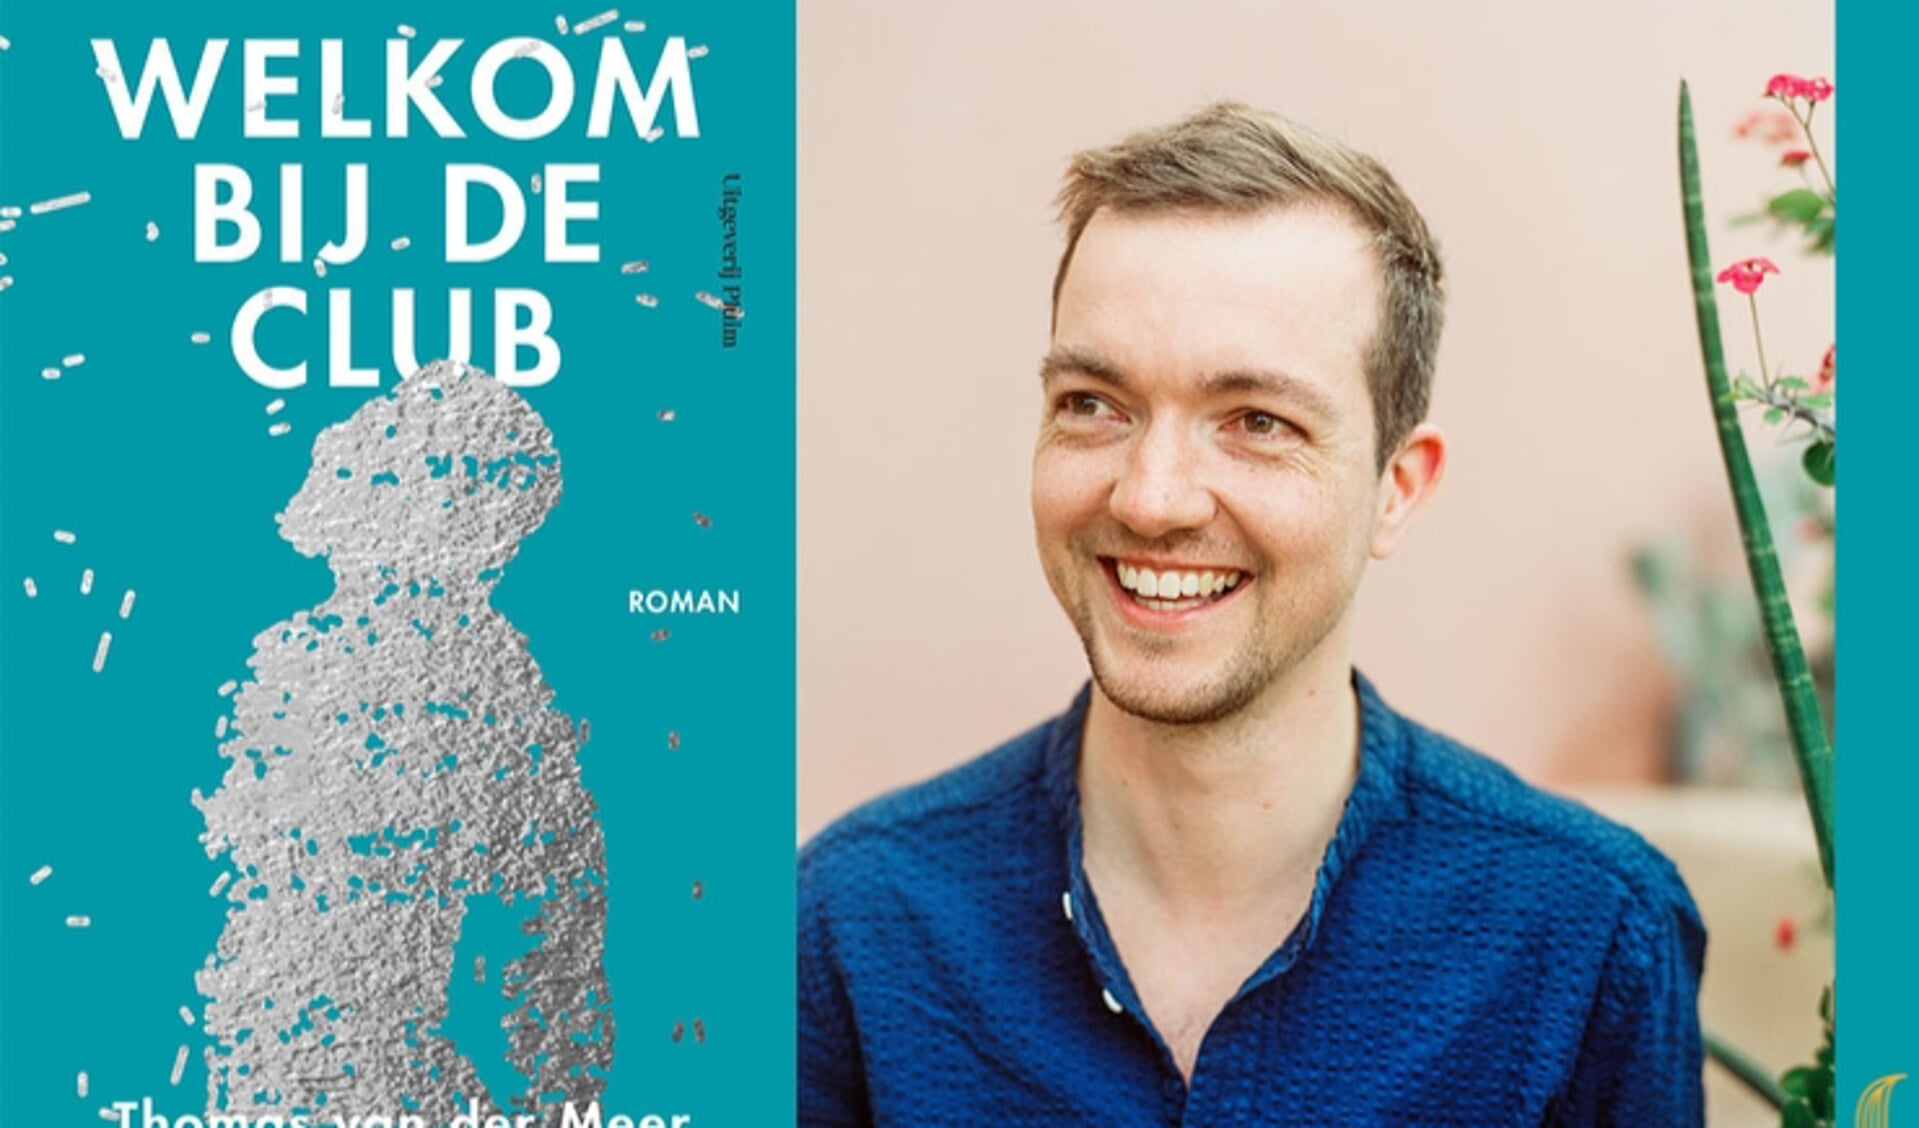 Thomas van der Meer met de omslag van zijn debuutroman, 'Welkom bij de club'